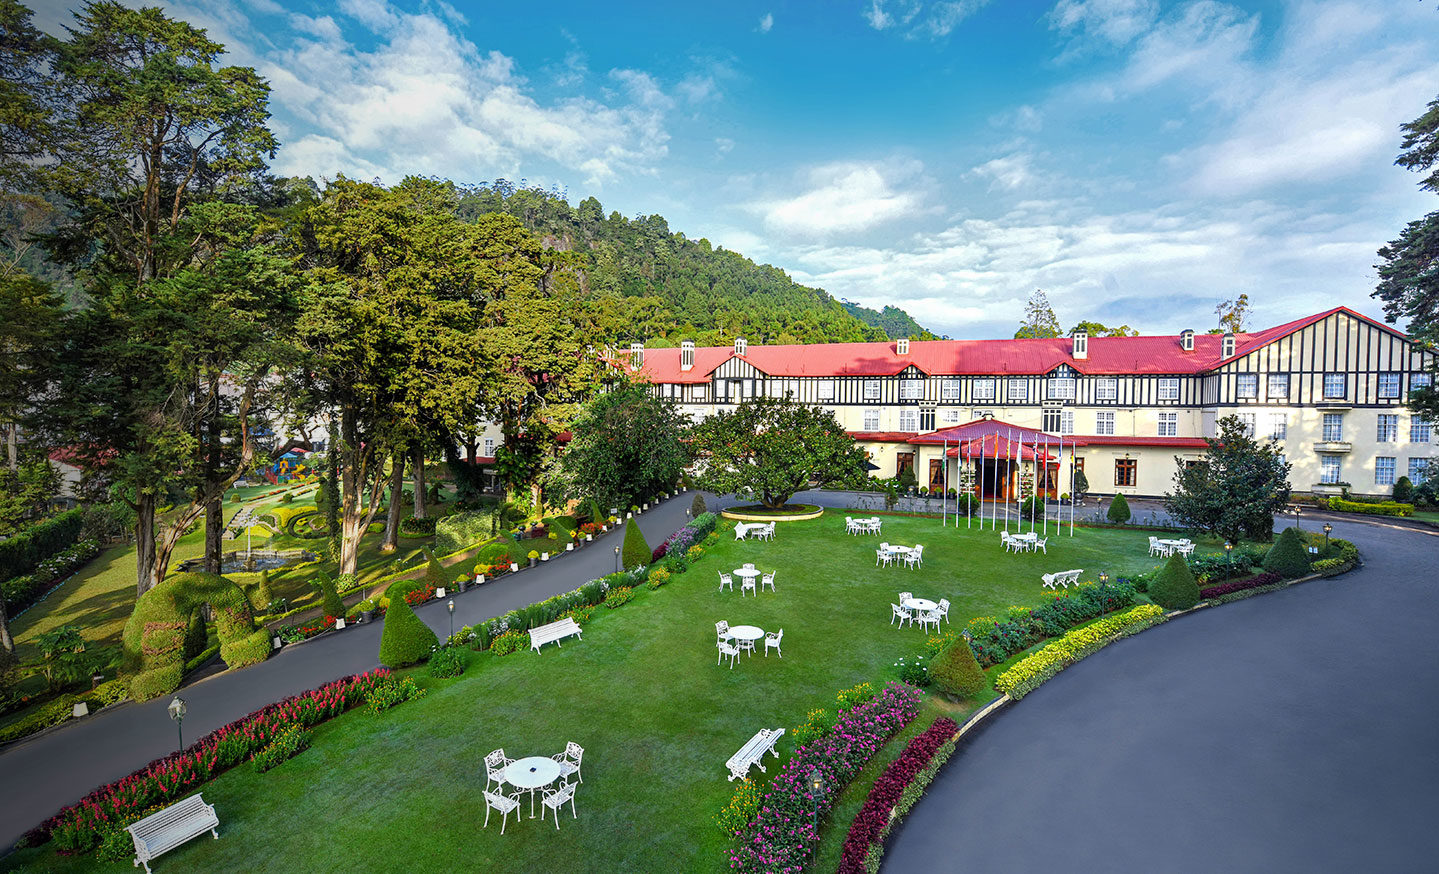 Sri Lanka - Nuwaraeliya - 1567 - The Grand Hotel